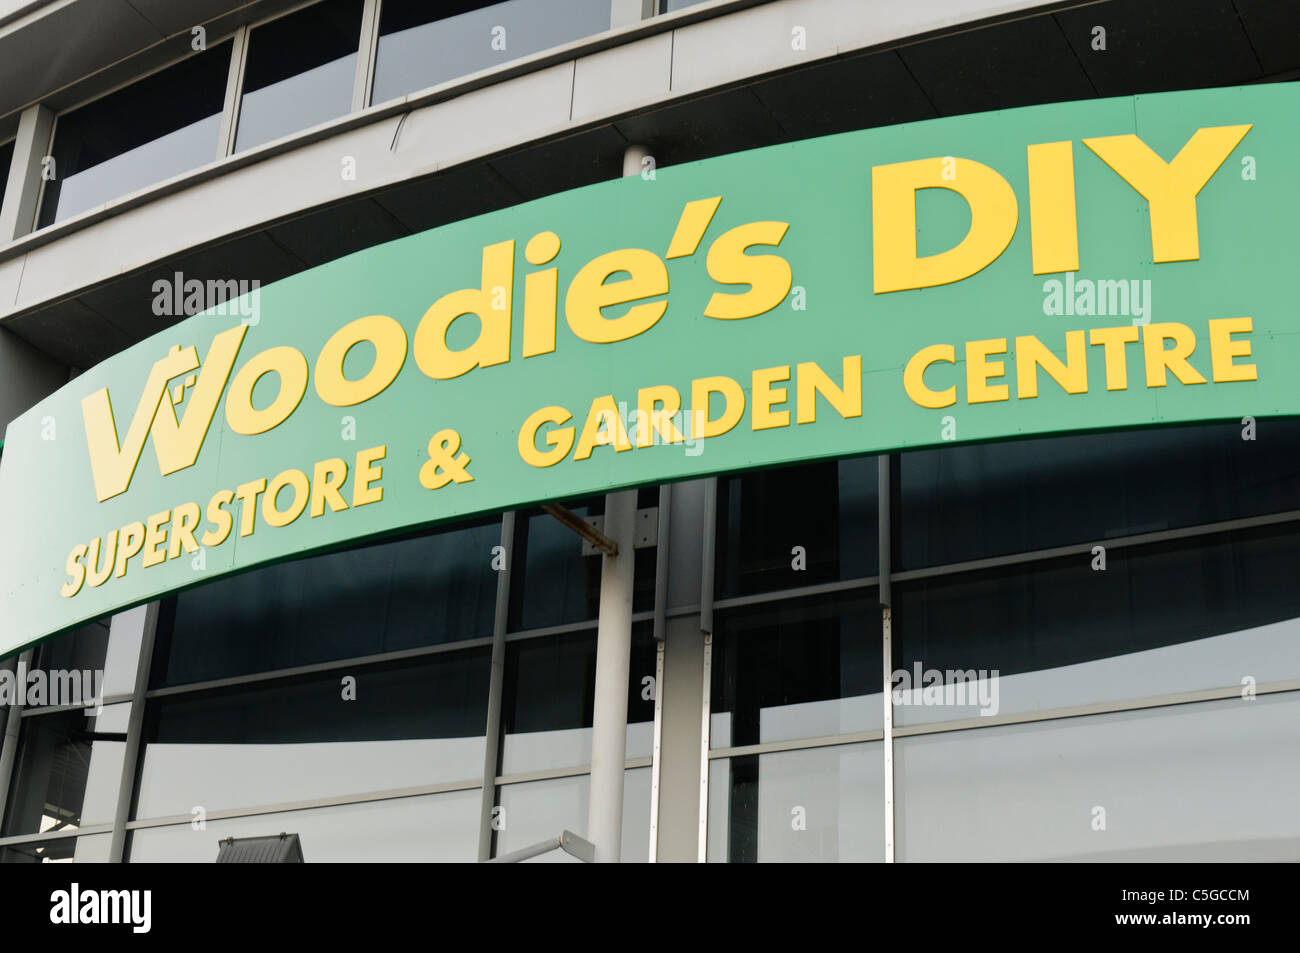 Sign above door of Woodie's DIY superstore and garden centre Stock Photo